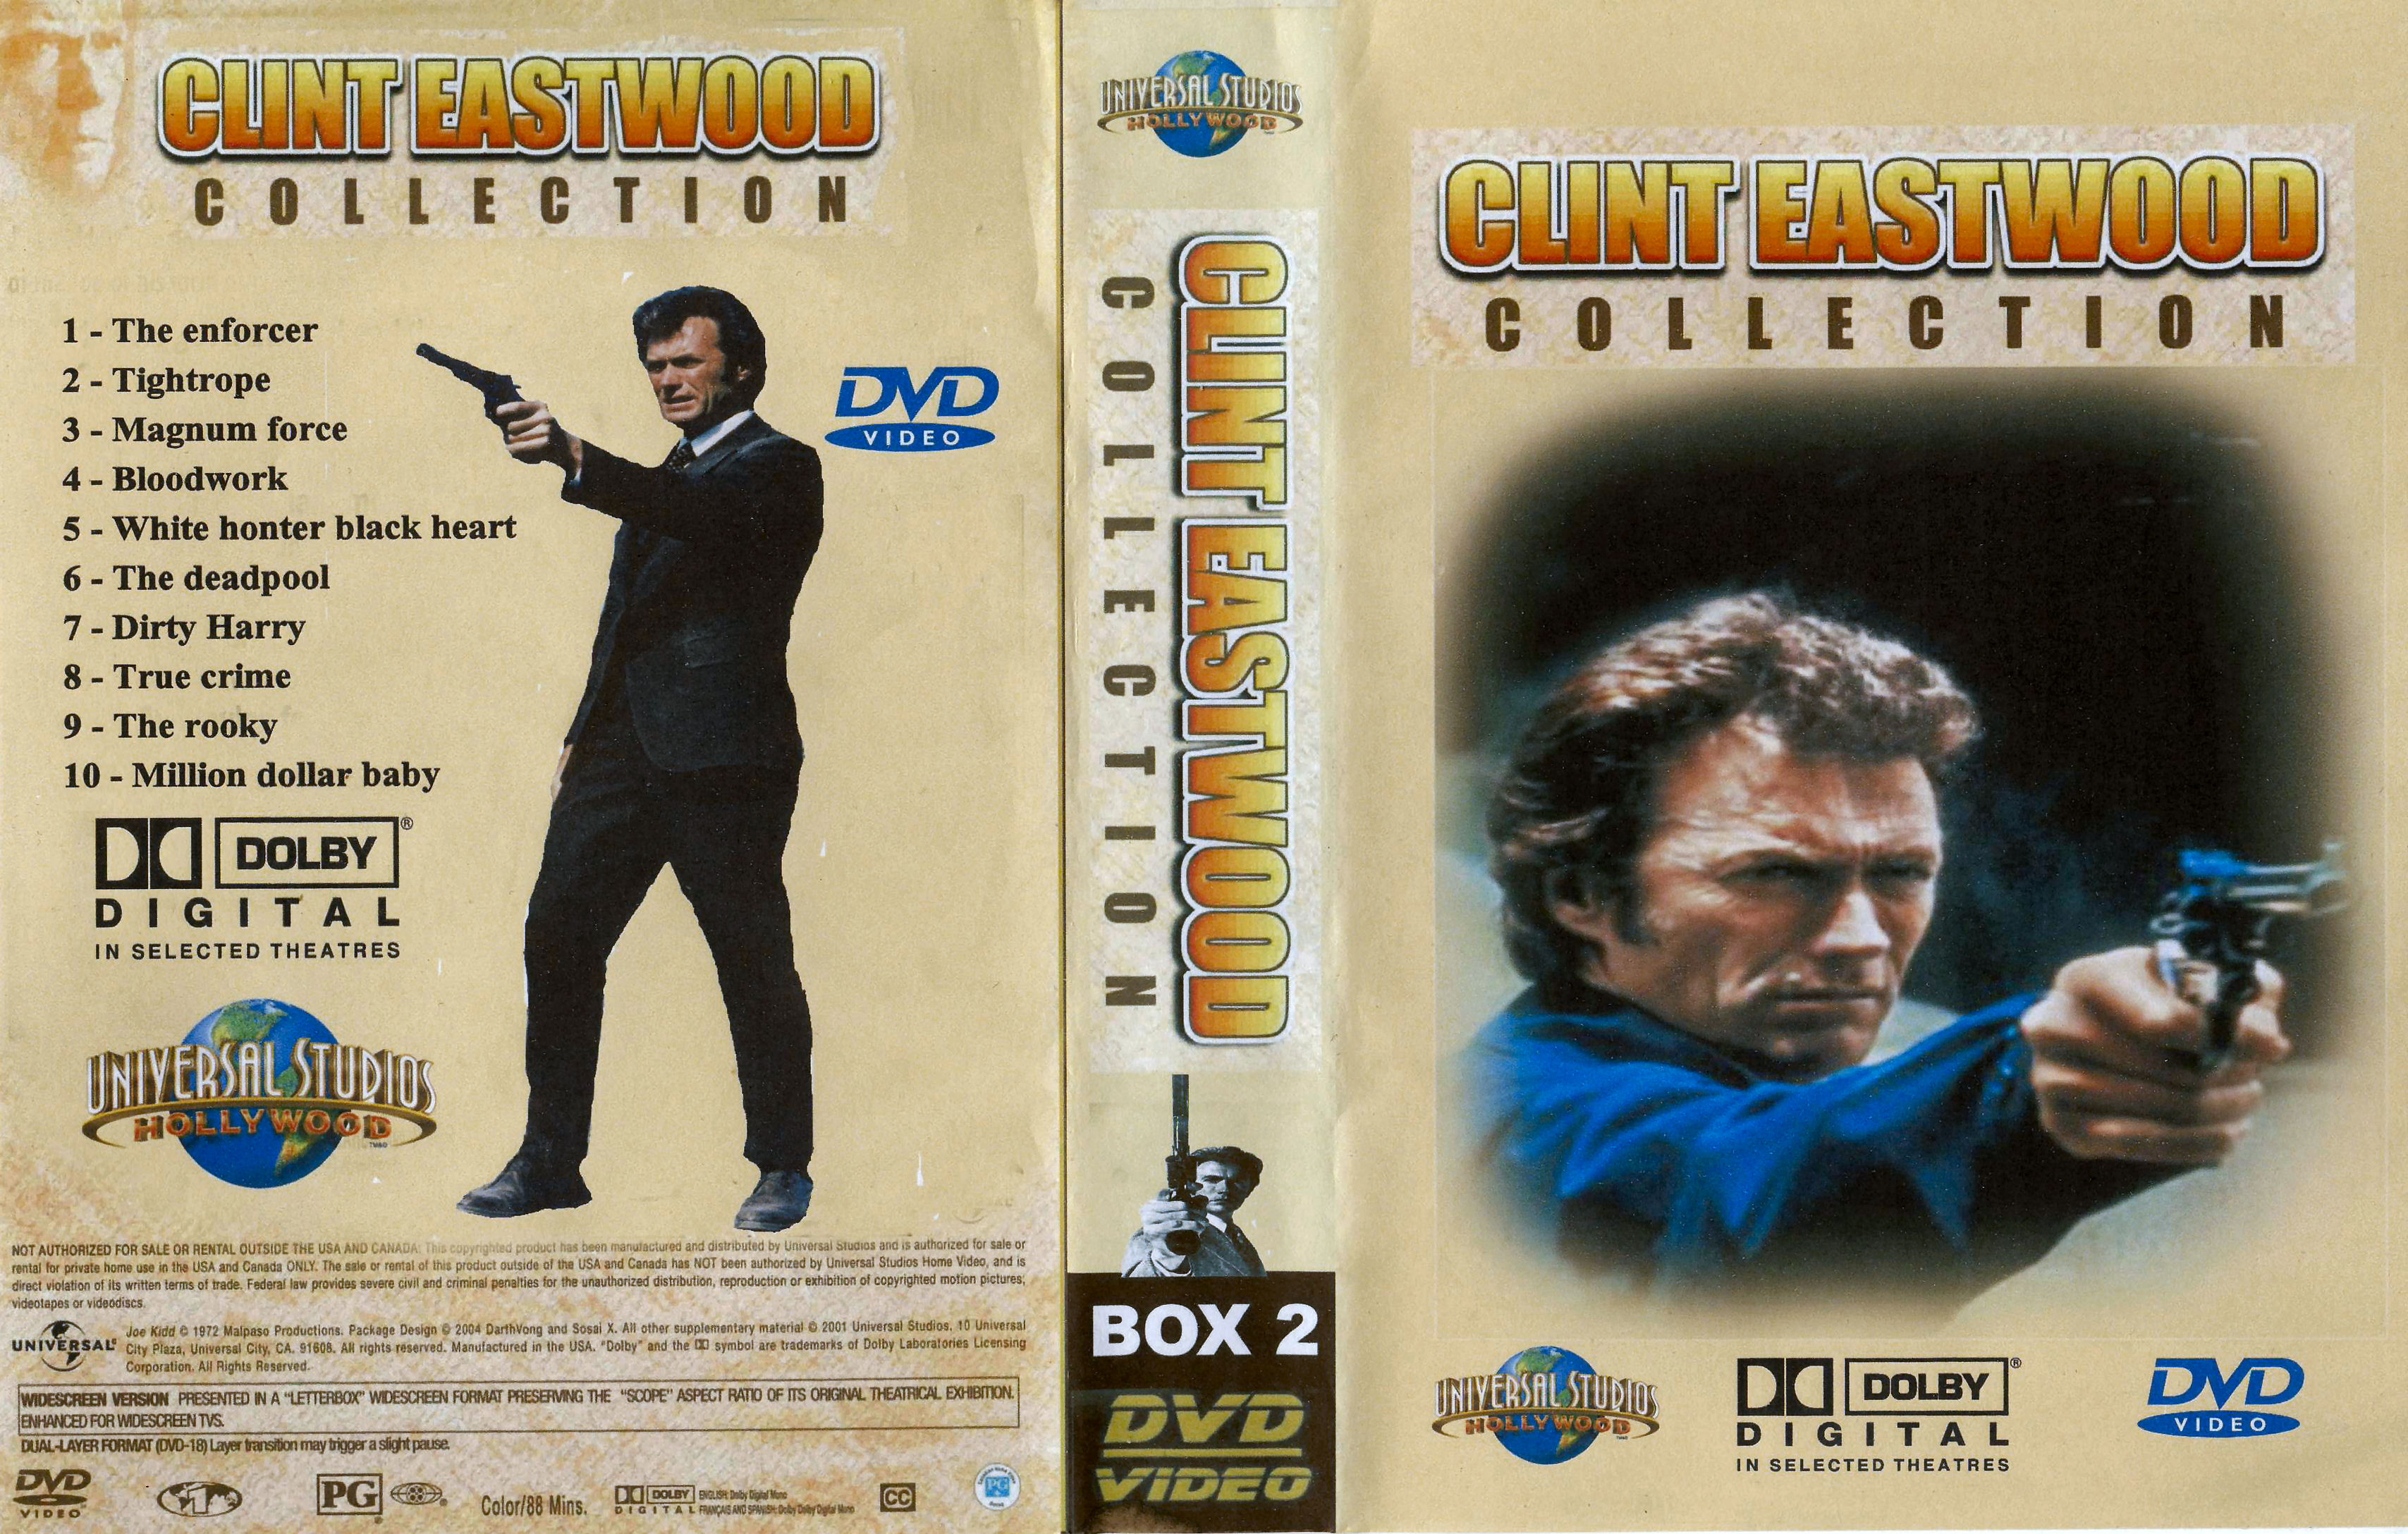 Clint Eastwood Collectie Box 2 DvD 2 van 10